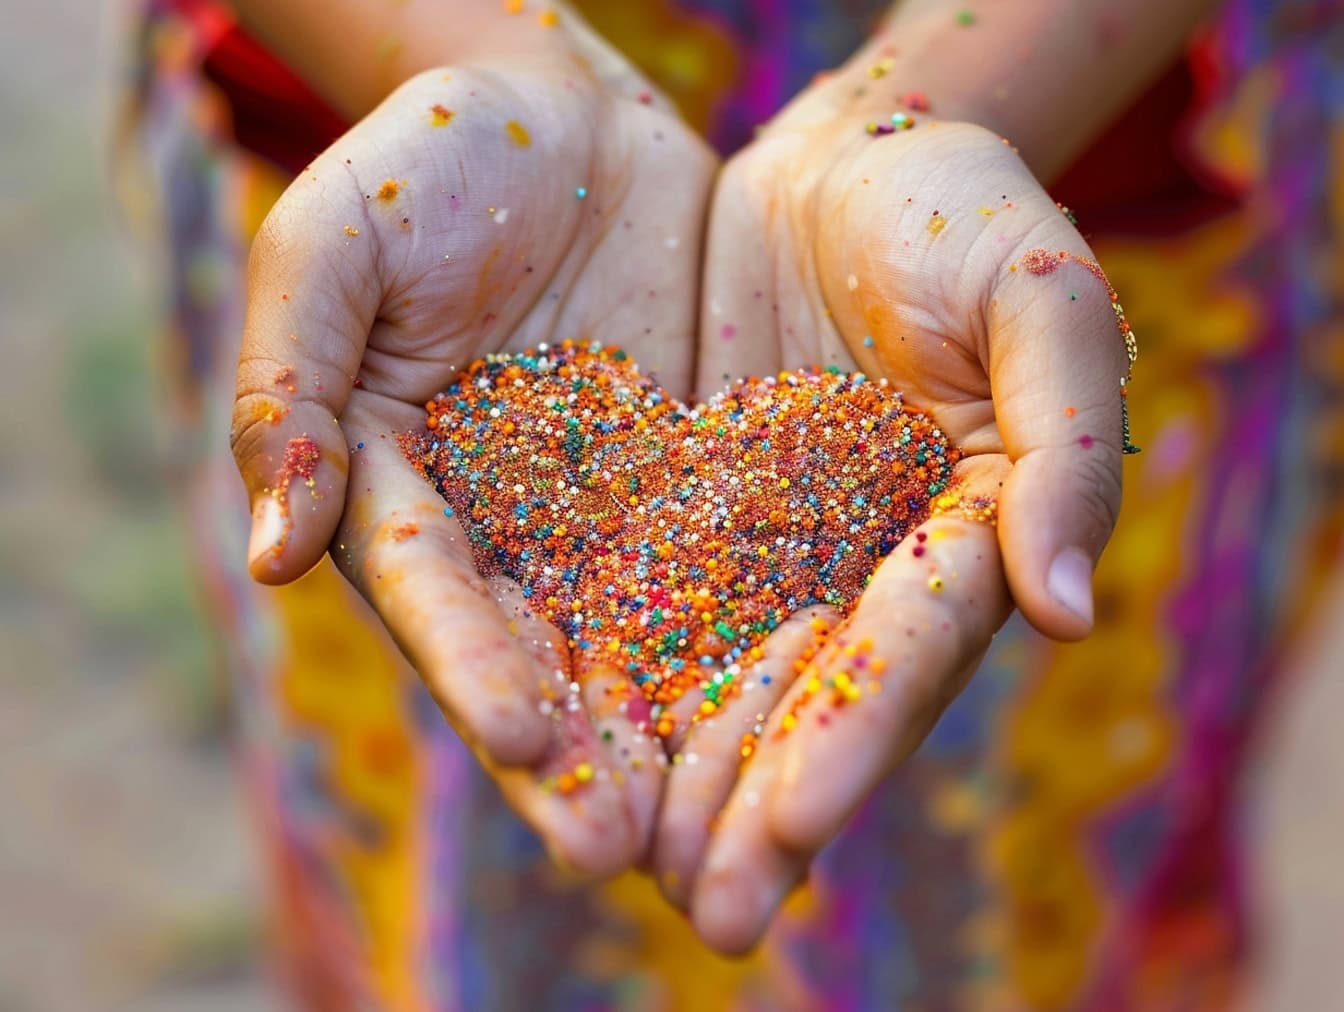 Kvinna som håller färgrik sand i sina händer i form av ett hjärta en illustration av ömhet, kärlek och romantik